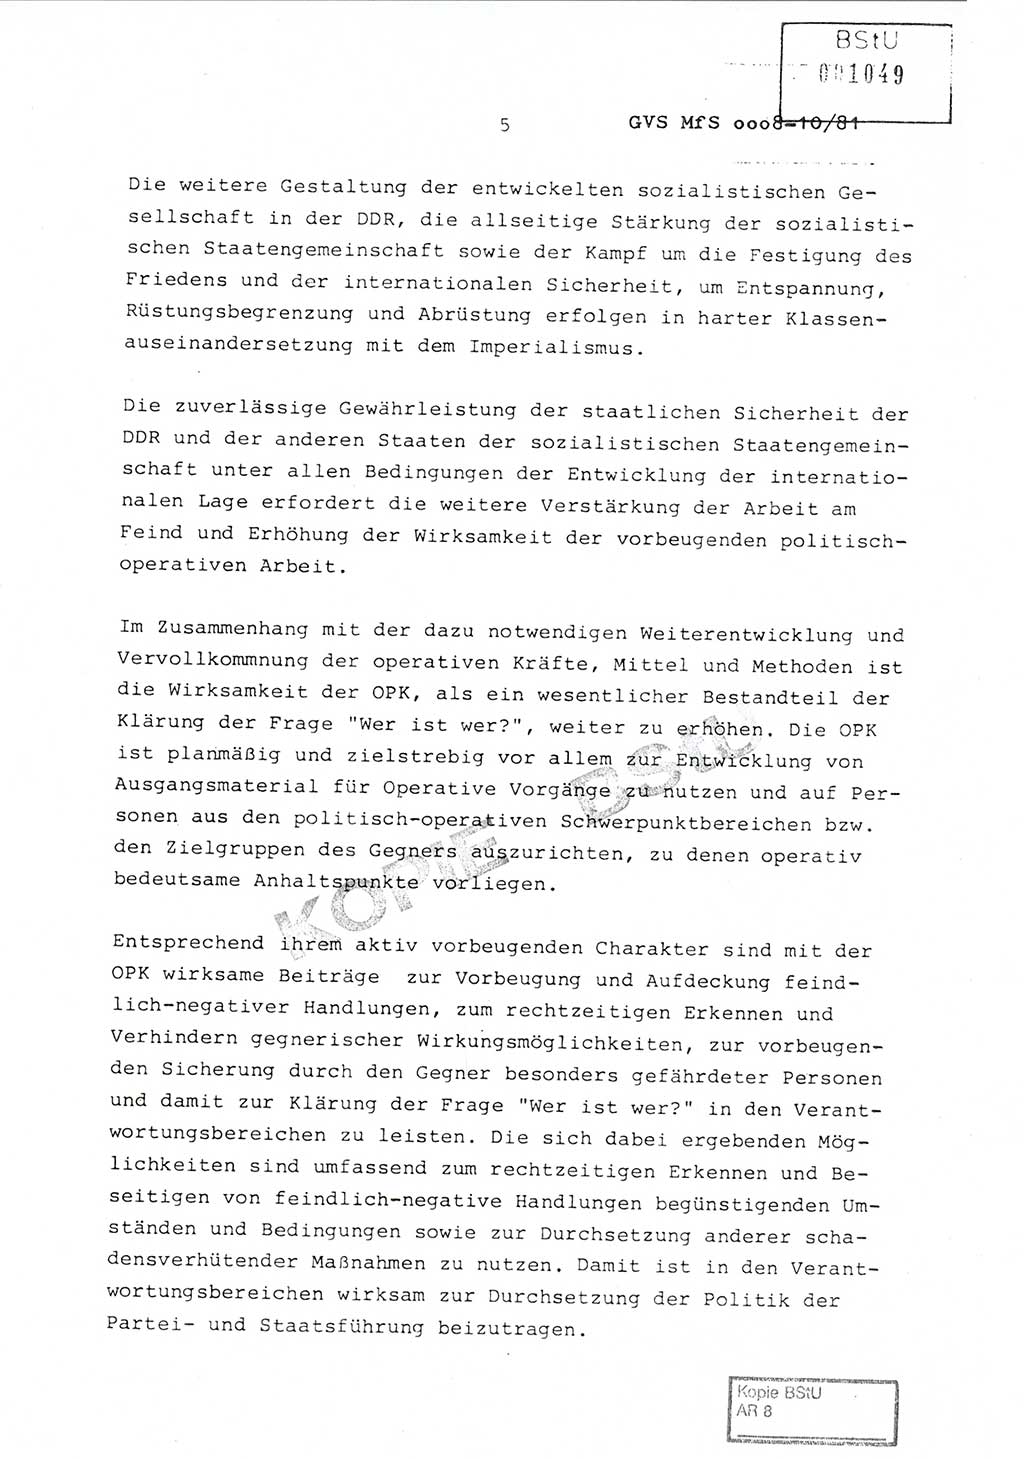 Richtlinie Nr. 1/81 über die operative Personenkontrolle (OPK), Ministerium für Staatssicherheit (MfS) [Deutsche Demokratische Republik (DDR)], Der Minister, Geheime Verschlußsache (GVS) ooo8-10/81, Berlin 1981, Blatt 5 (RL 1/81 OPK DDR MfS Min. GVS ooo8-10/81 1981, Bl. 5)